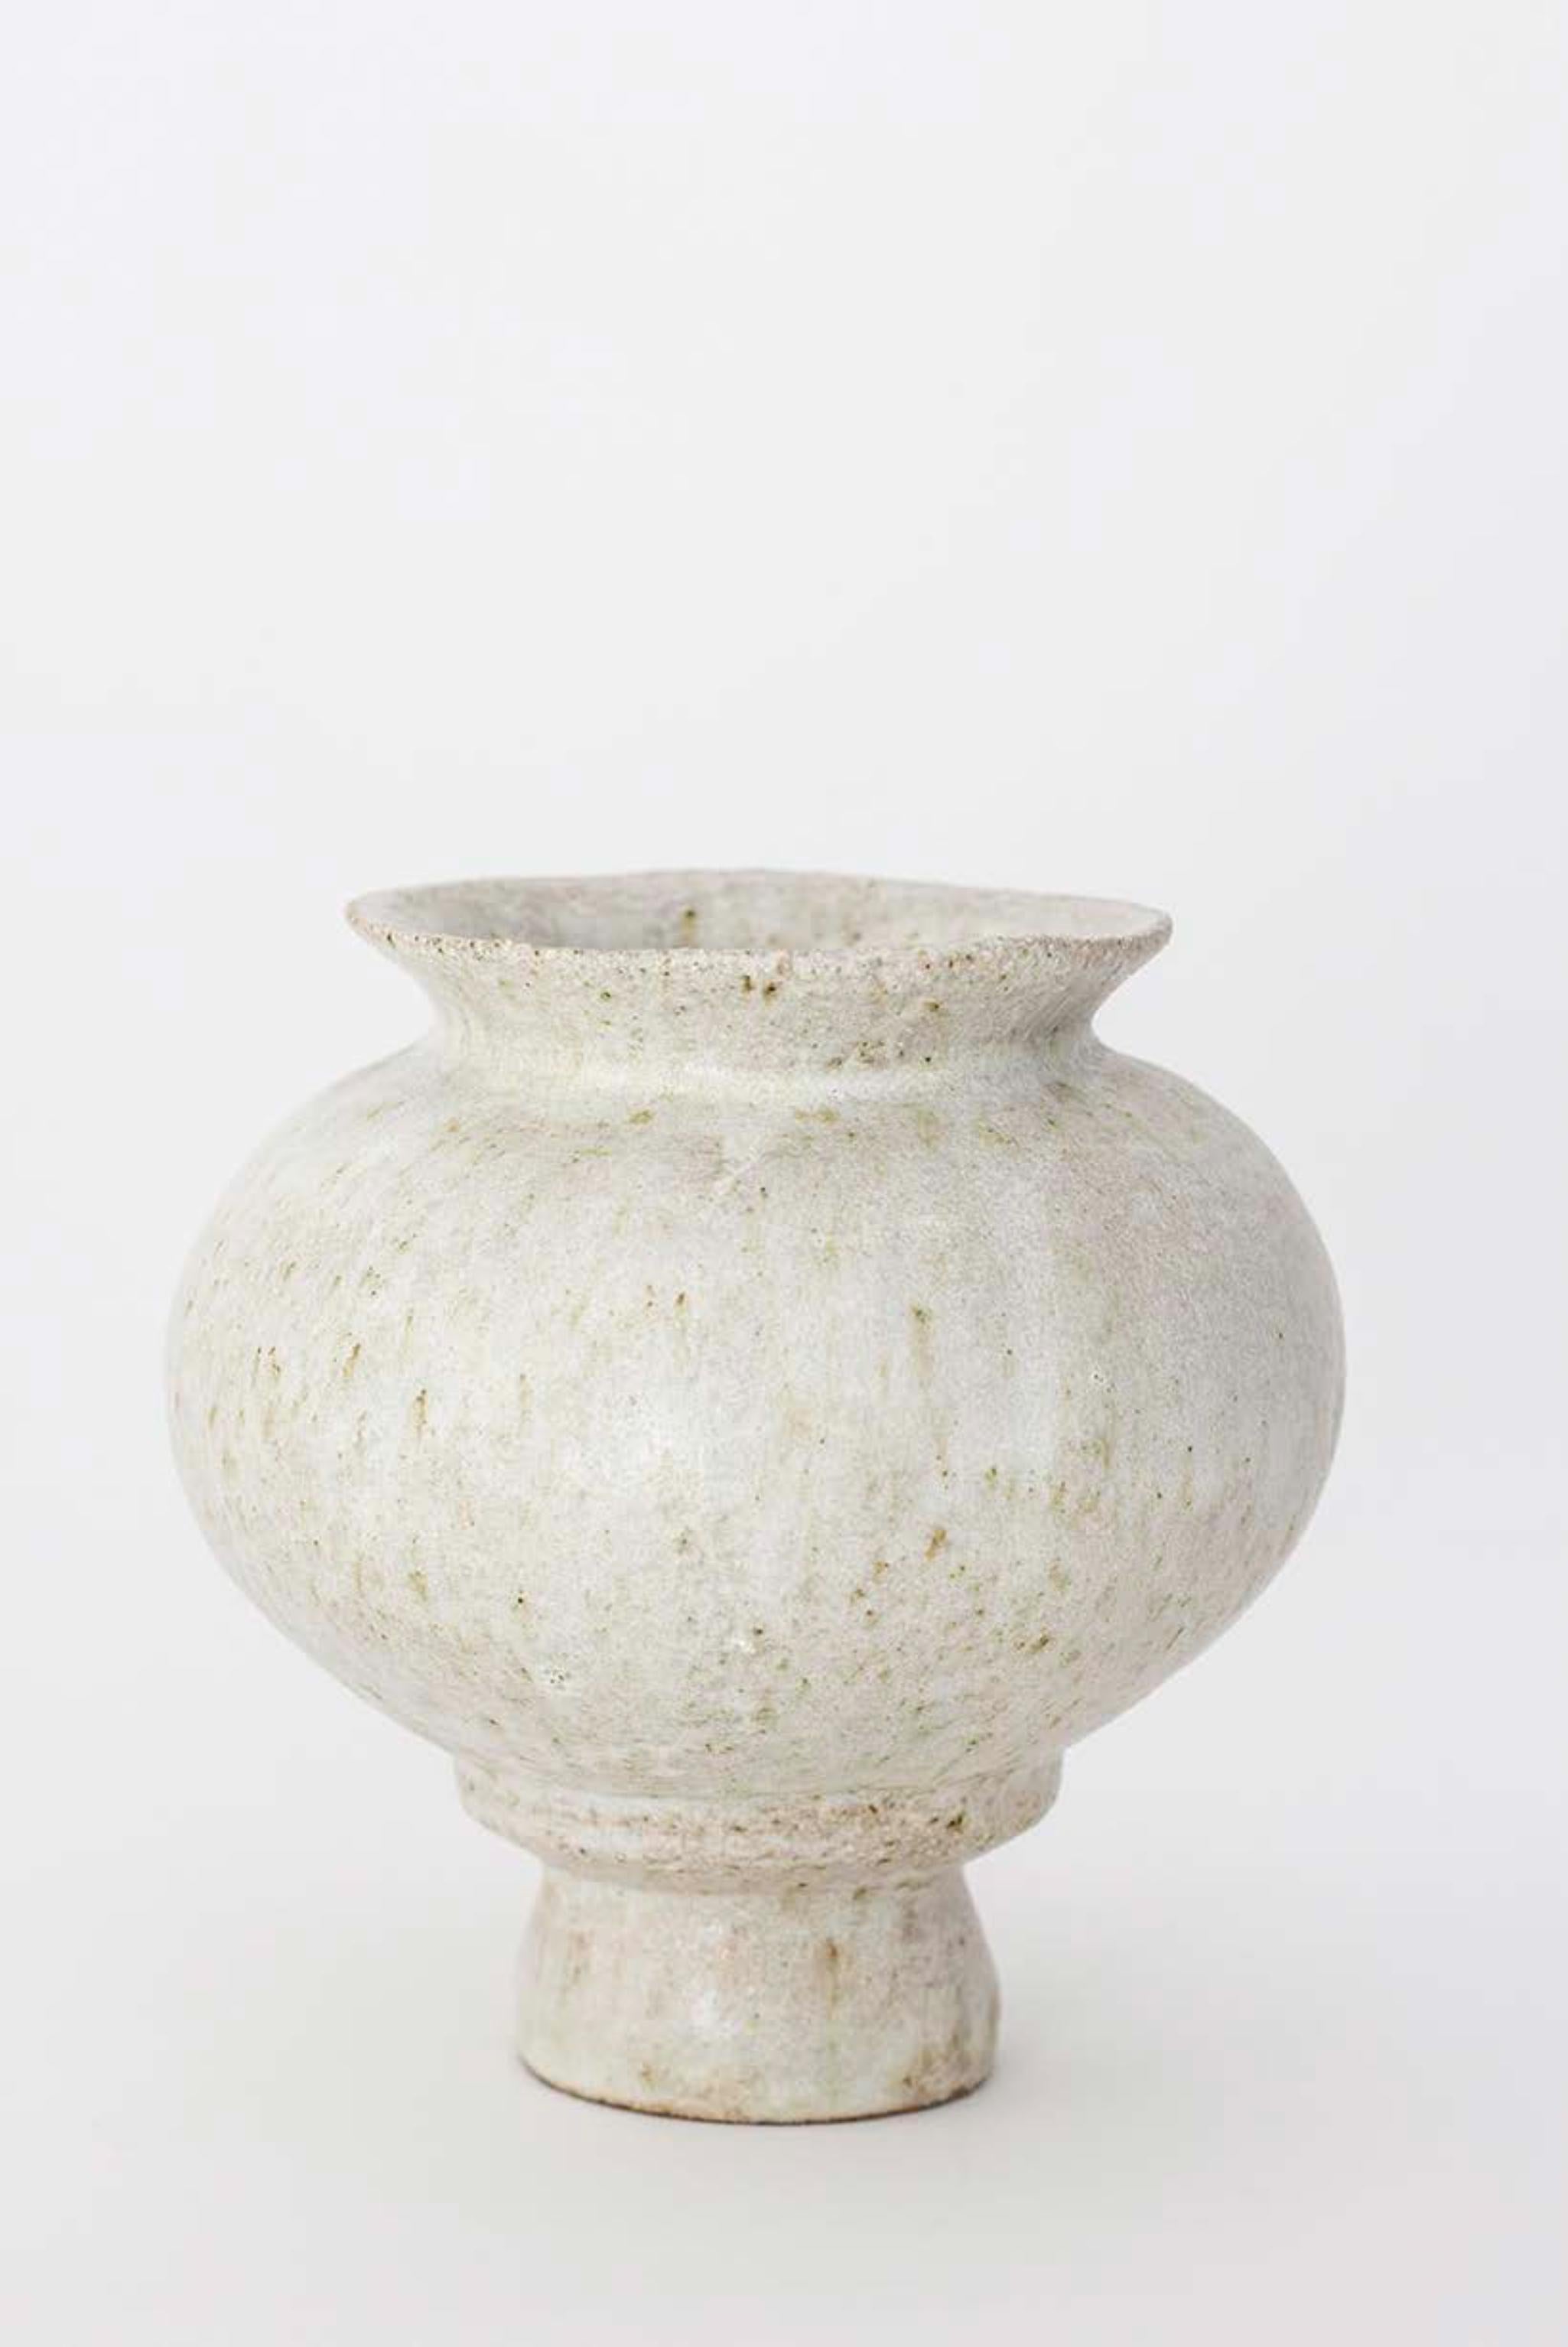 Einzigartige Arq 007 Vase von Raquel Vidal und Pedro Paz
Abmessungen: Ø 15,5 x 15,5 cm
MATERIAL: handgeformtes glasiertes Steinzeug.

Die Arq-Serie ist aus unserer eigenen Produktion hervorgegangen. Sie lässt sich von der Archäologie inspirieren und